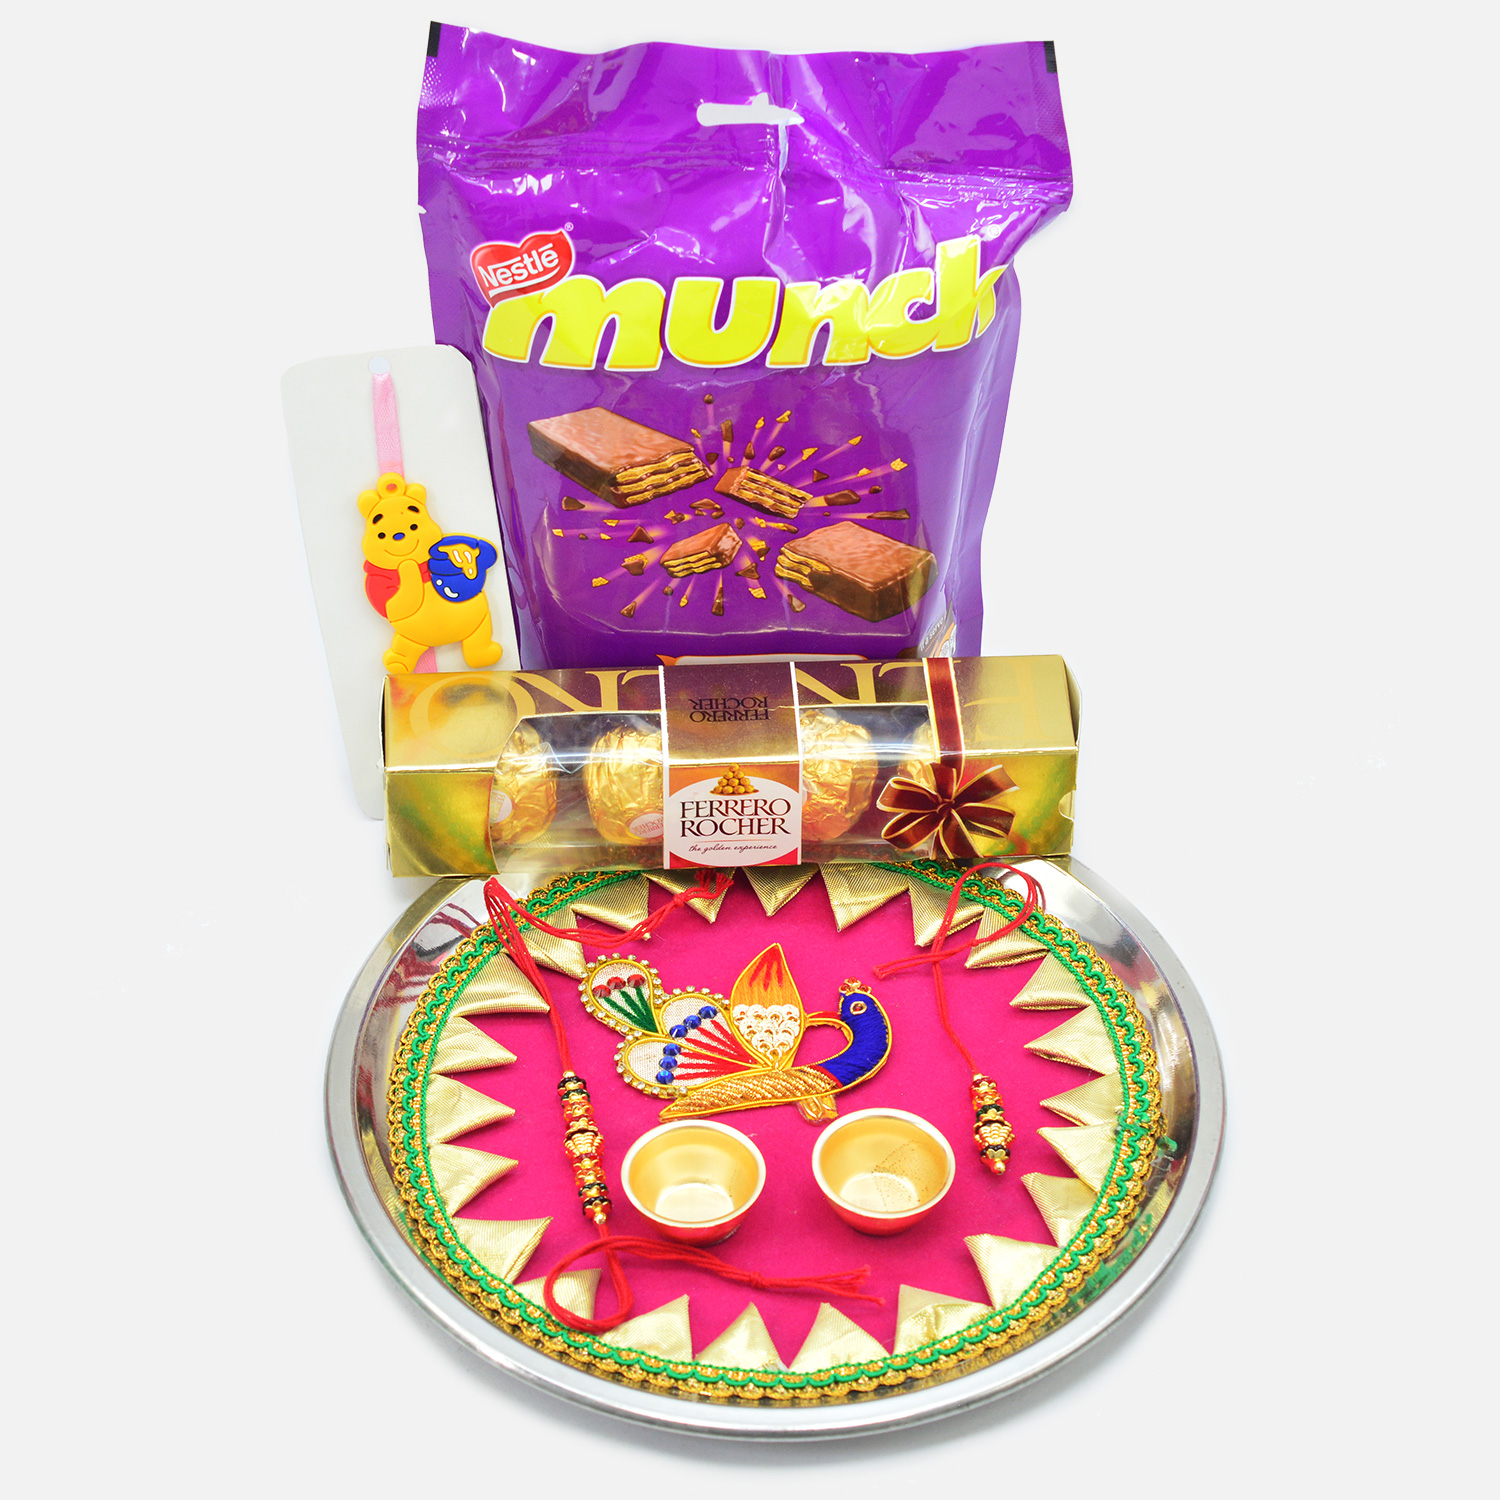 Munch and Ferrero Rocher Chocolate with Beautiful Rakhi Puja Thali and Rakhis